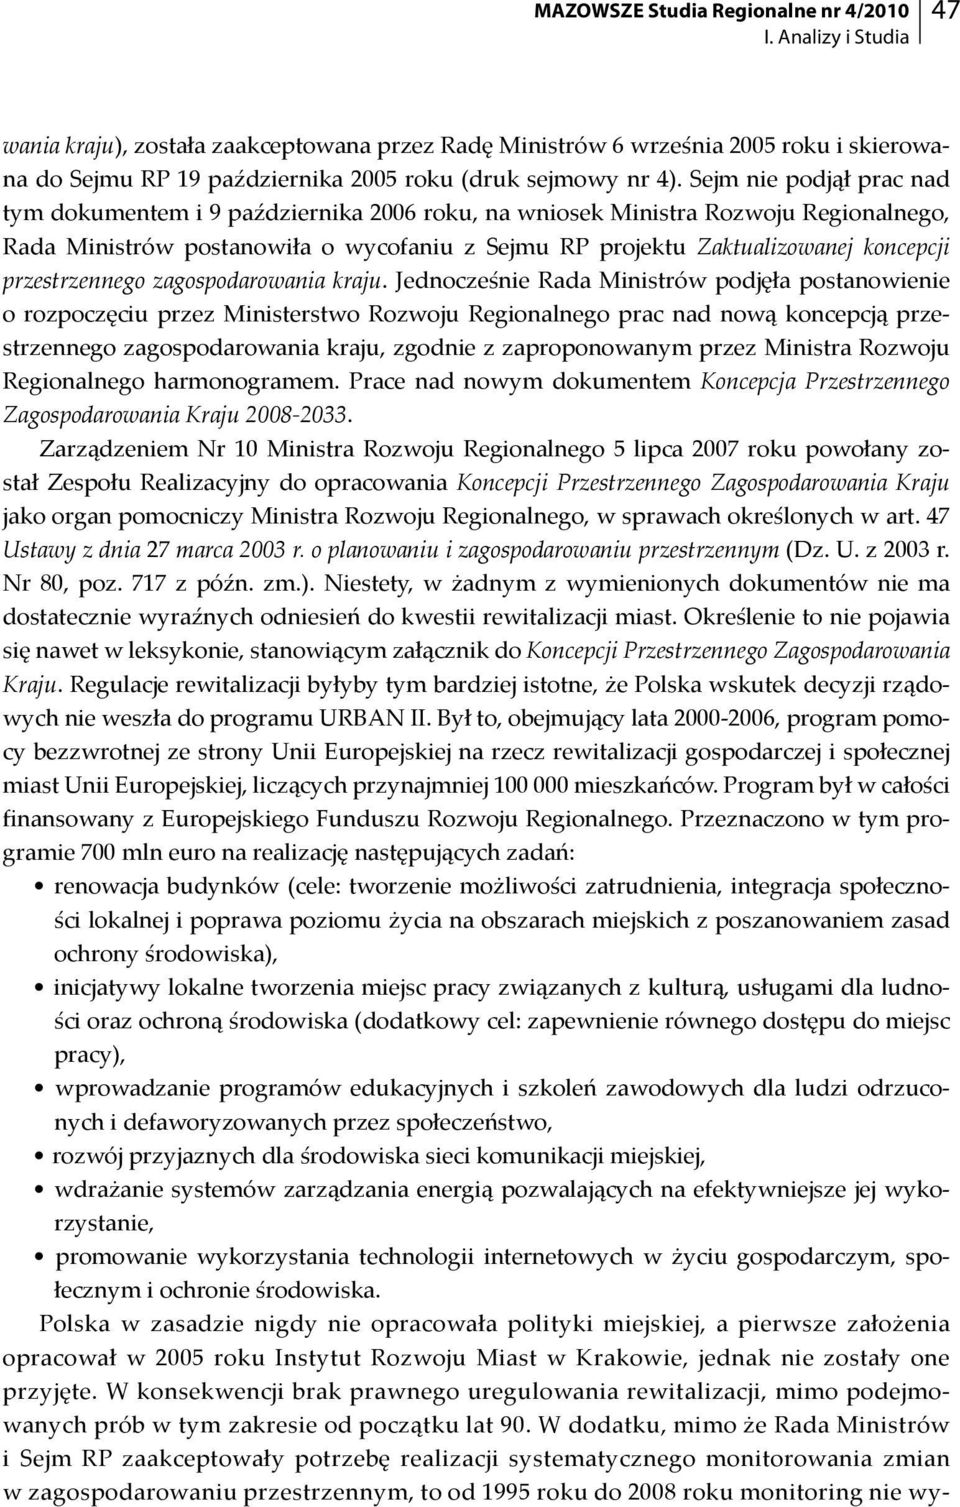 Sejm nie podjął prac nad tym dokumentem i 9 października 2006 roku, na wniosek Ministra Rozwoju Regionalnego, Rada Ministrów postanowiła o wycofaniu z Sejmu RP projektu Zaktualizowanej koncepcji